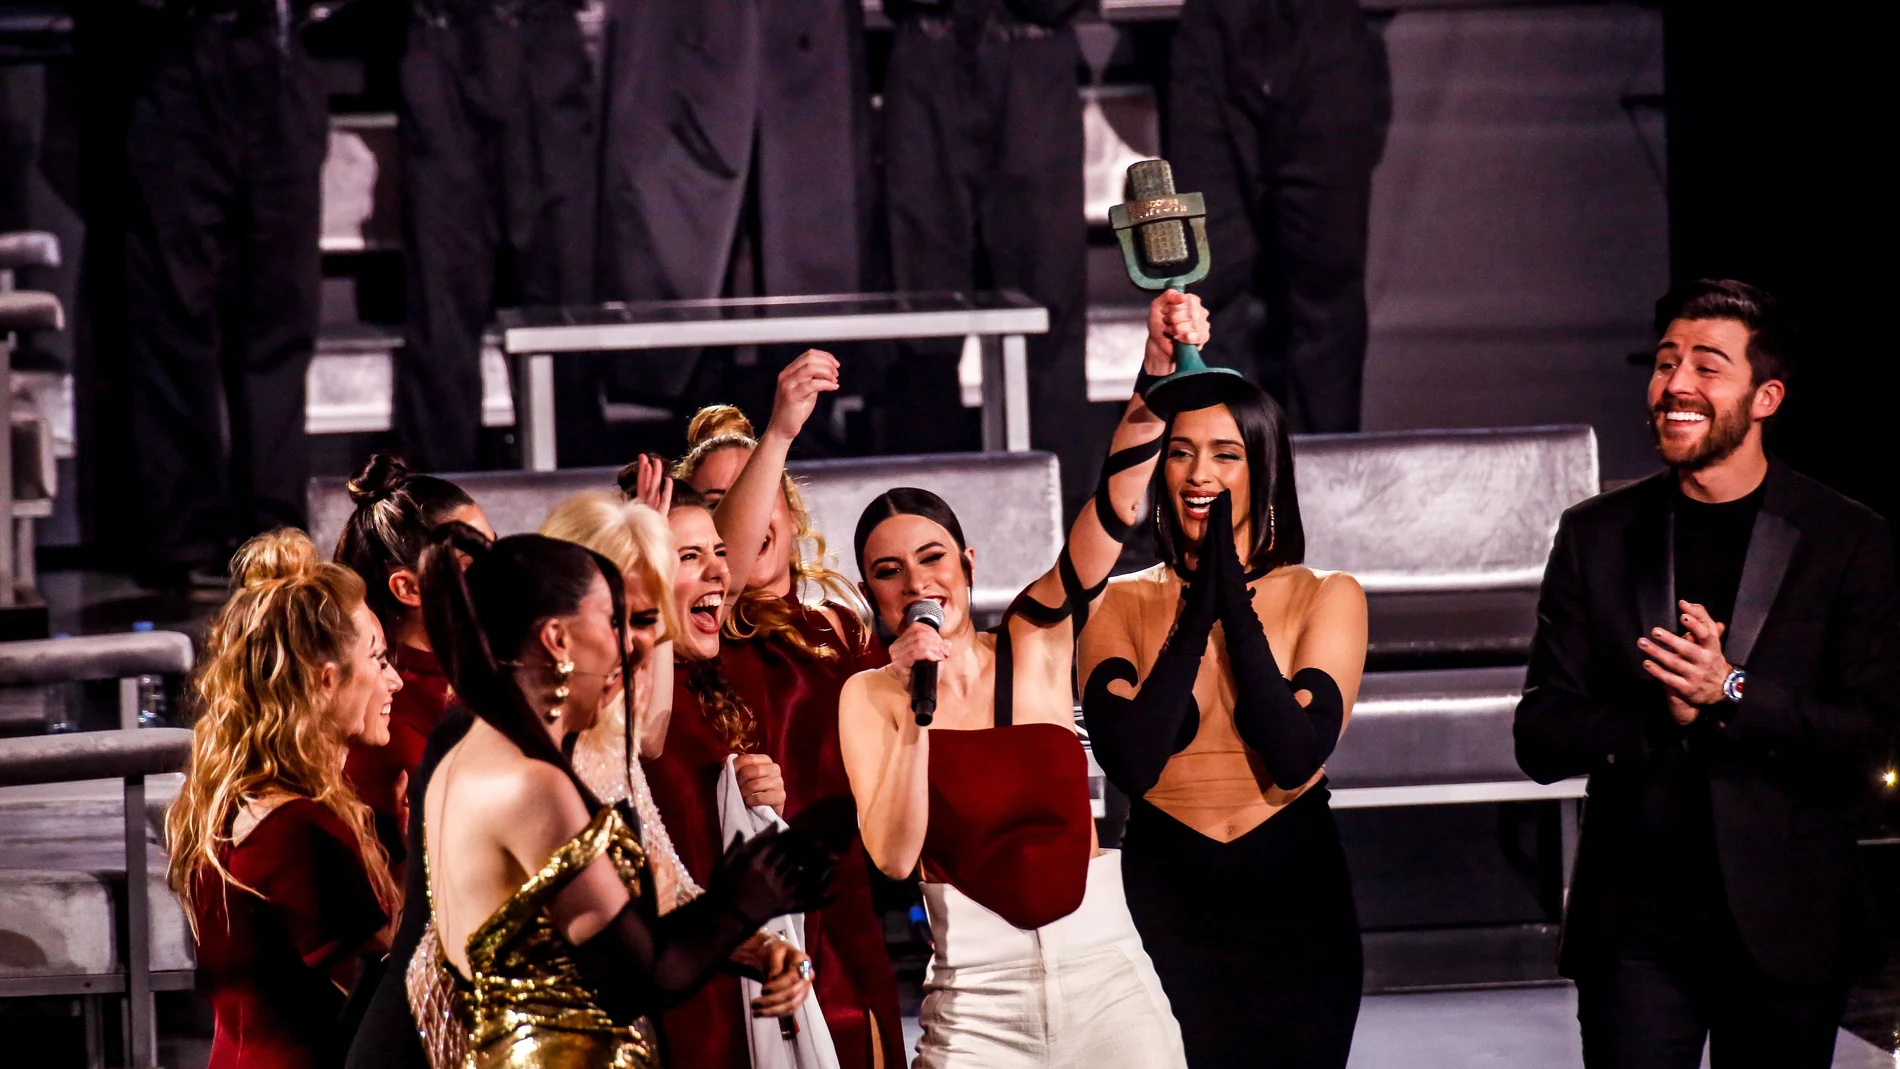 Blanca Paloma con el trofeo tras ganar la final de Benidorm Fest, en el Mirador del Castillo, en Benidorm. Radiotelevisión Española (RTVE) organiza este festival musical para elegir al artista y la canción que representará a España en el certámen Eurovisión 2023. 